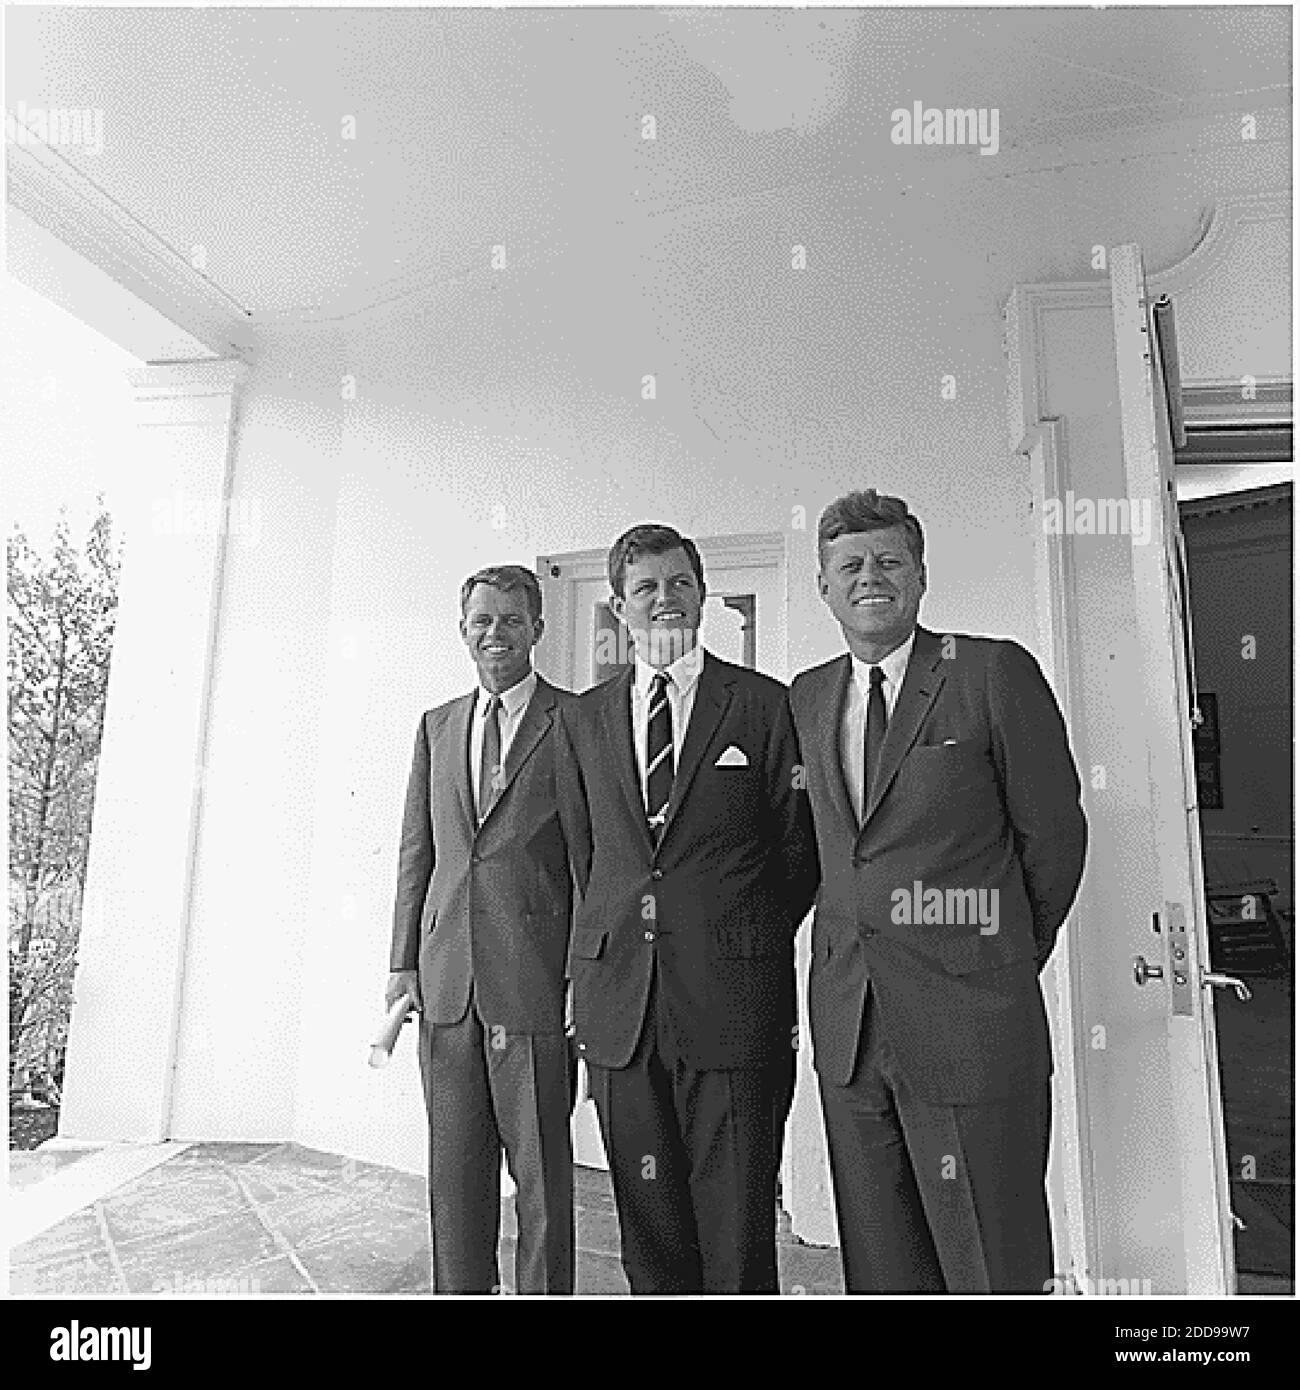 PAS DE FILM, PAS DE VIDÉO, PAS de TV, PAS DE DOCUMENTAIRE - le Président John F. Kennedy, à droite, se tient avec ses frères, le sénateur Edward Kennedy (D-Mass), le centre et procureur général Robert F, Kennedy devant le bureau ovale de la Maison Blanche à Washington, D.C., le 28 août 1963. Photo par document/MCT/ABACAPRESS.COM Banque D'Images